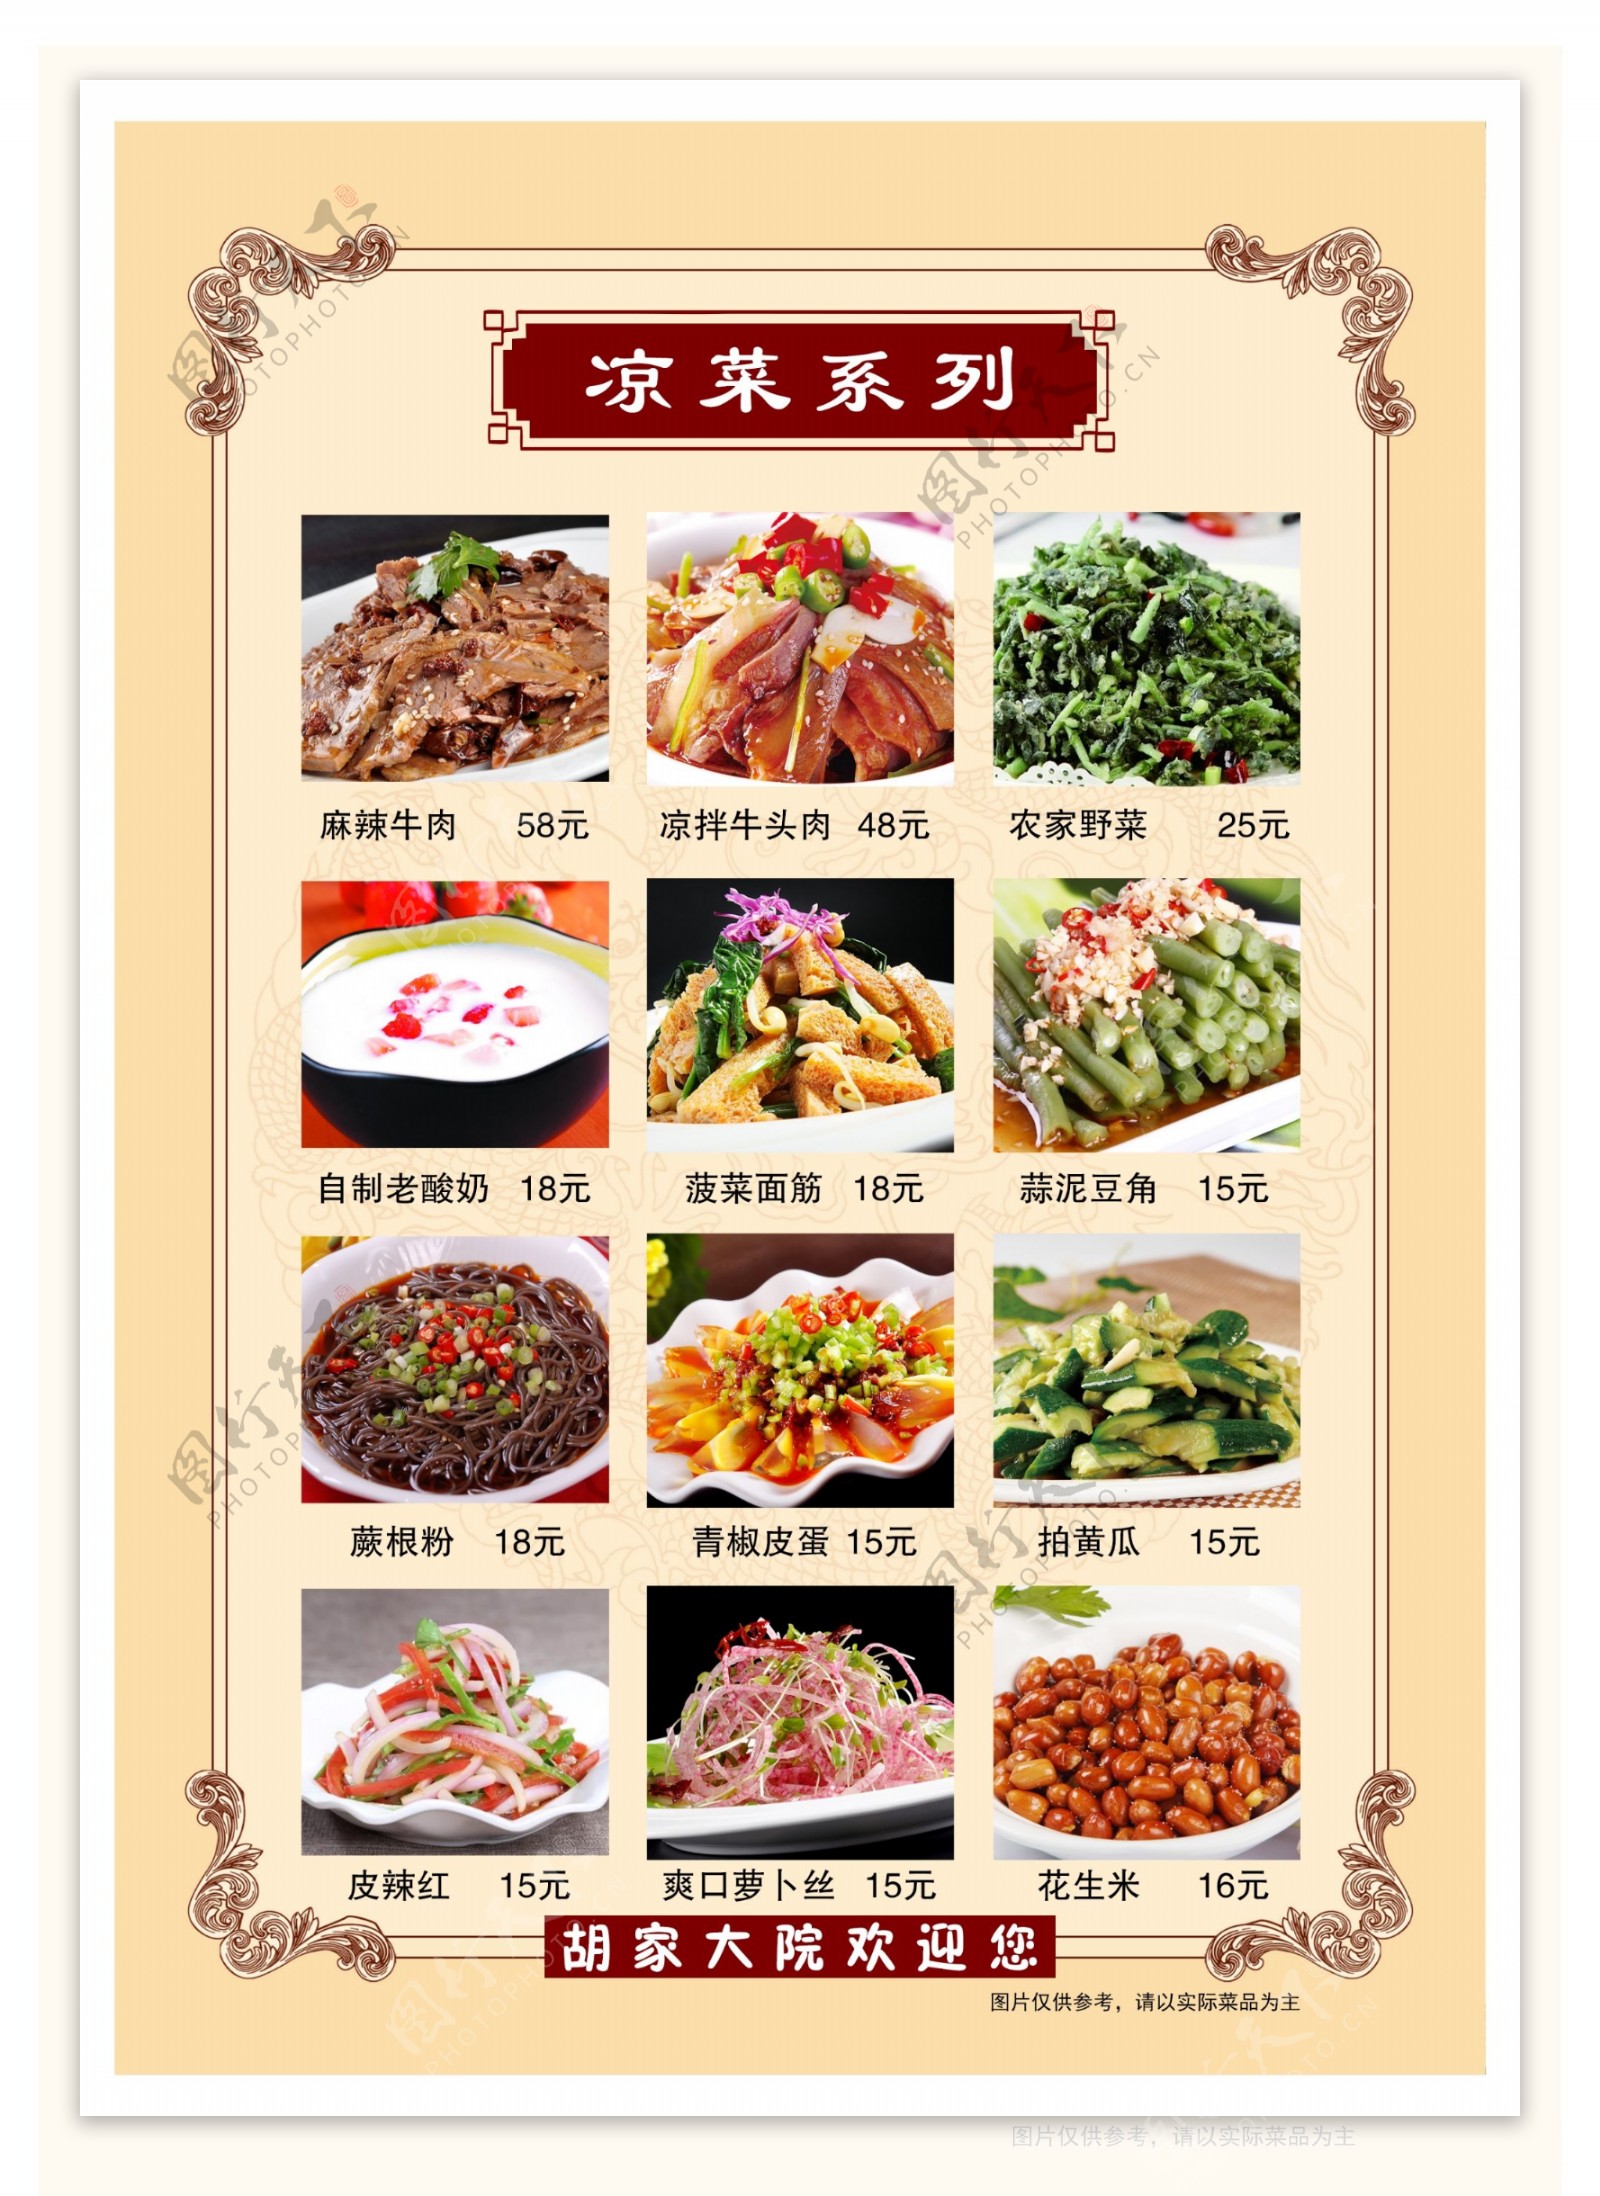 菜单菜谱价格表餐厅中餐